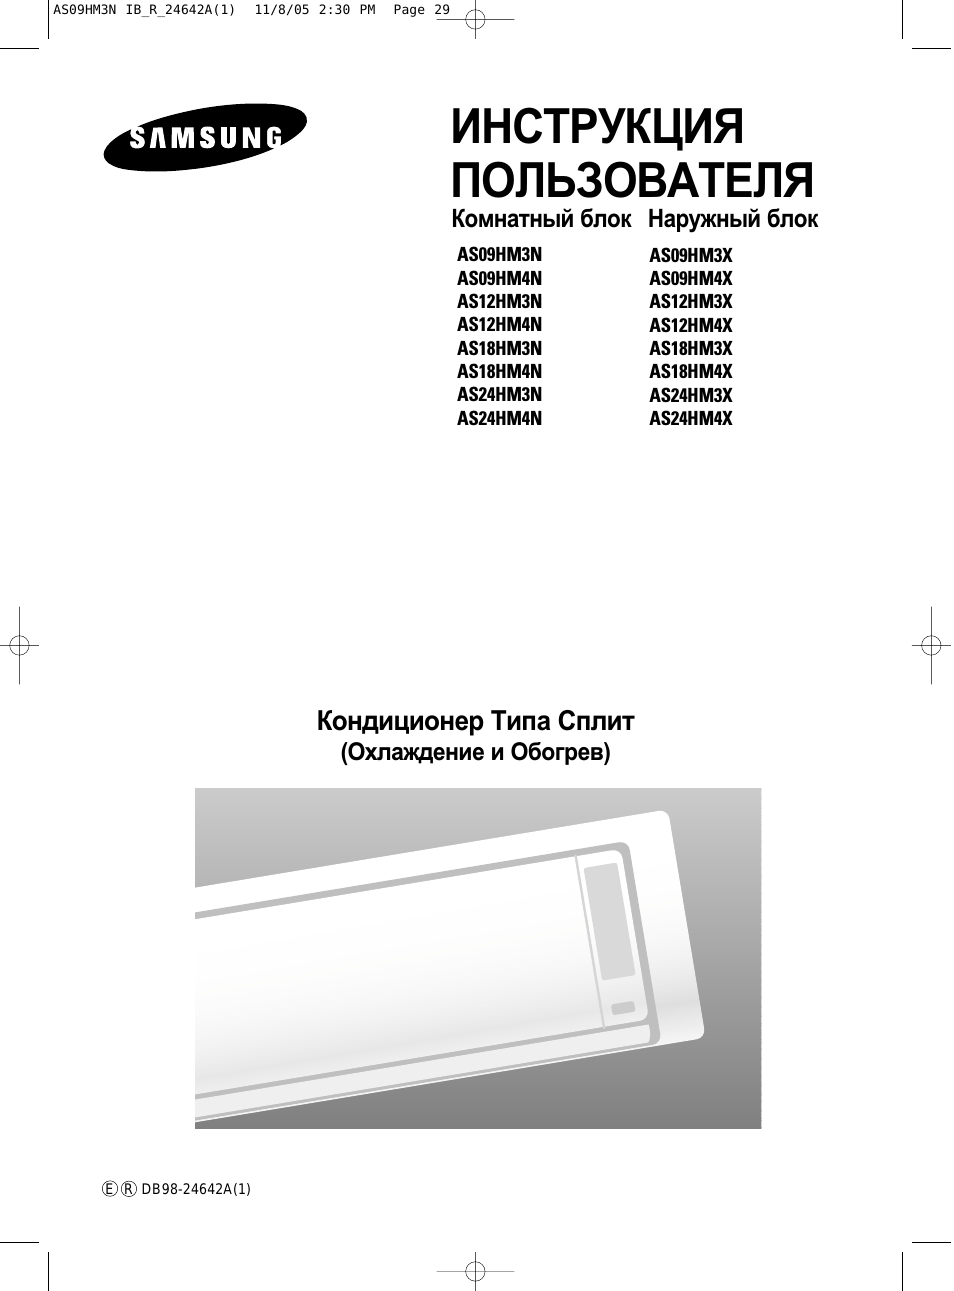 Инструкция по эксплуатации Samsung AS09HM3N | 30 страниц